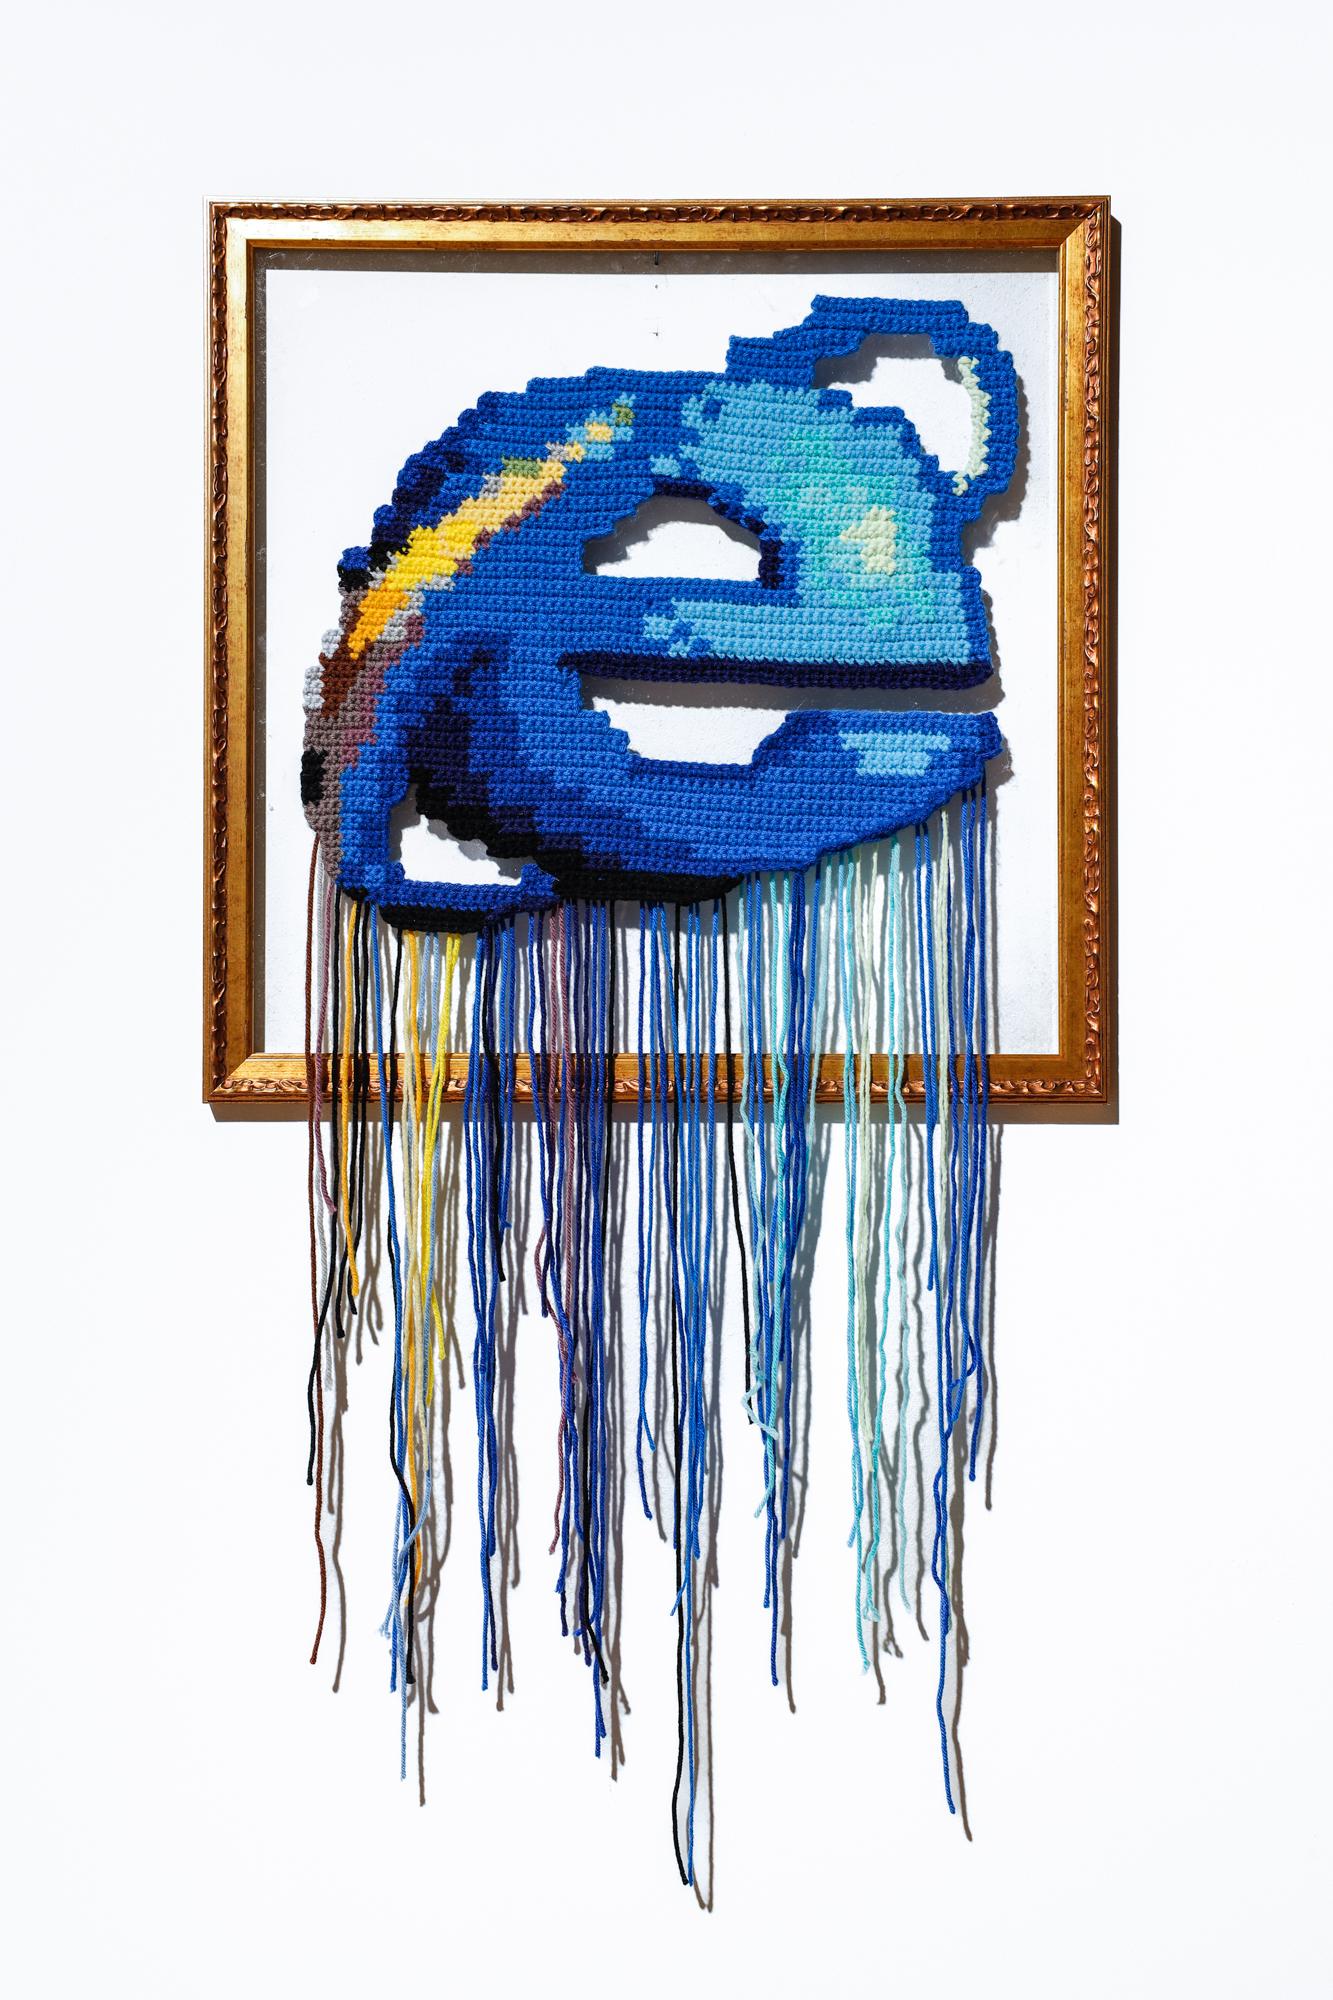 "Internet Explorer", Internet Icons, Textilien, Häkeln Acryl auf Plexiglas – Mixed Media Art von Nicole Nikolich, Lace in the Moon